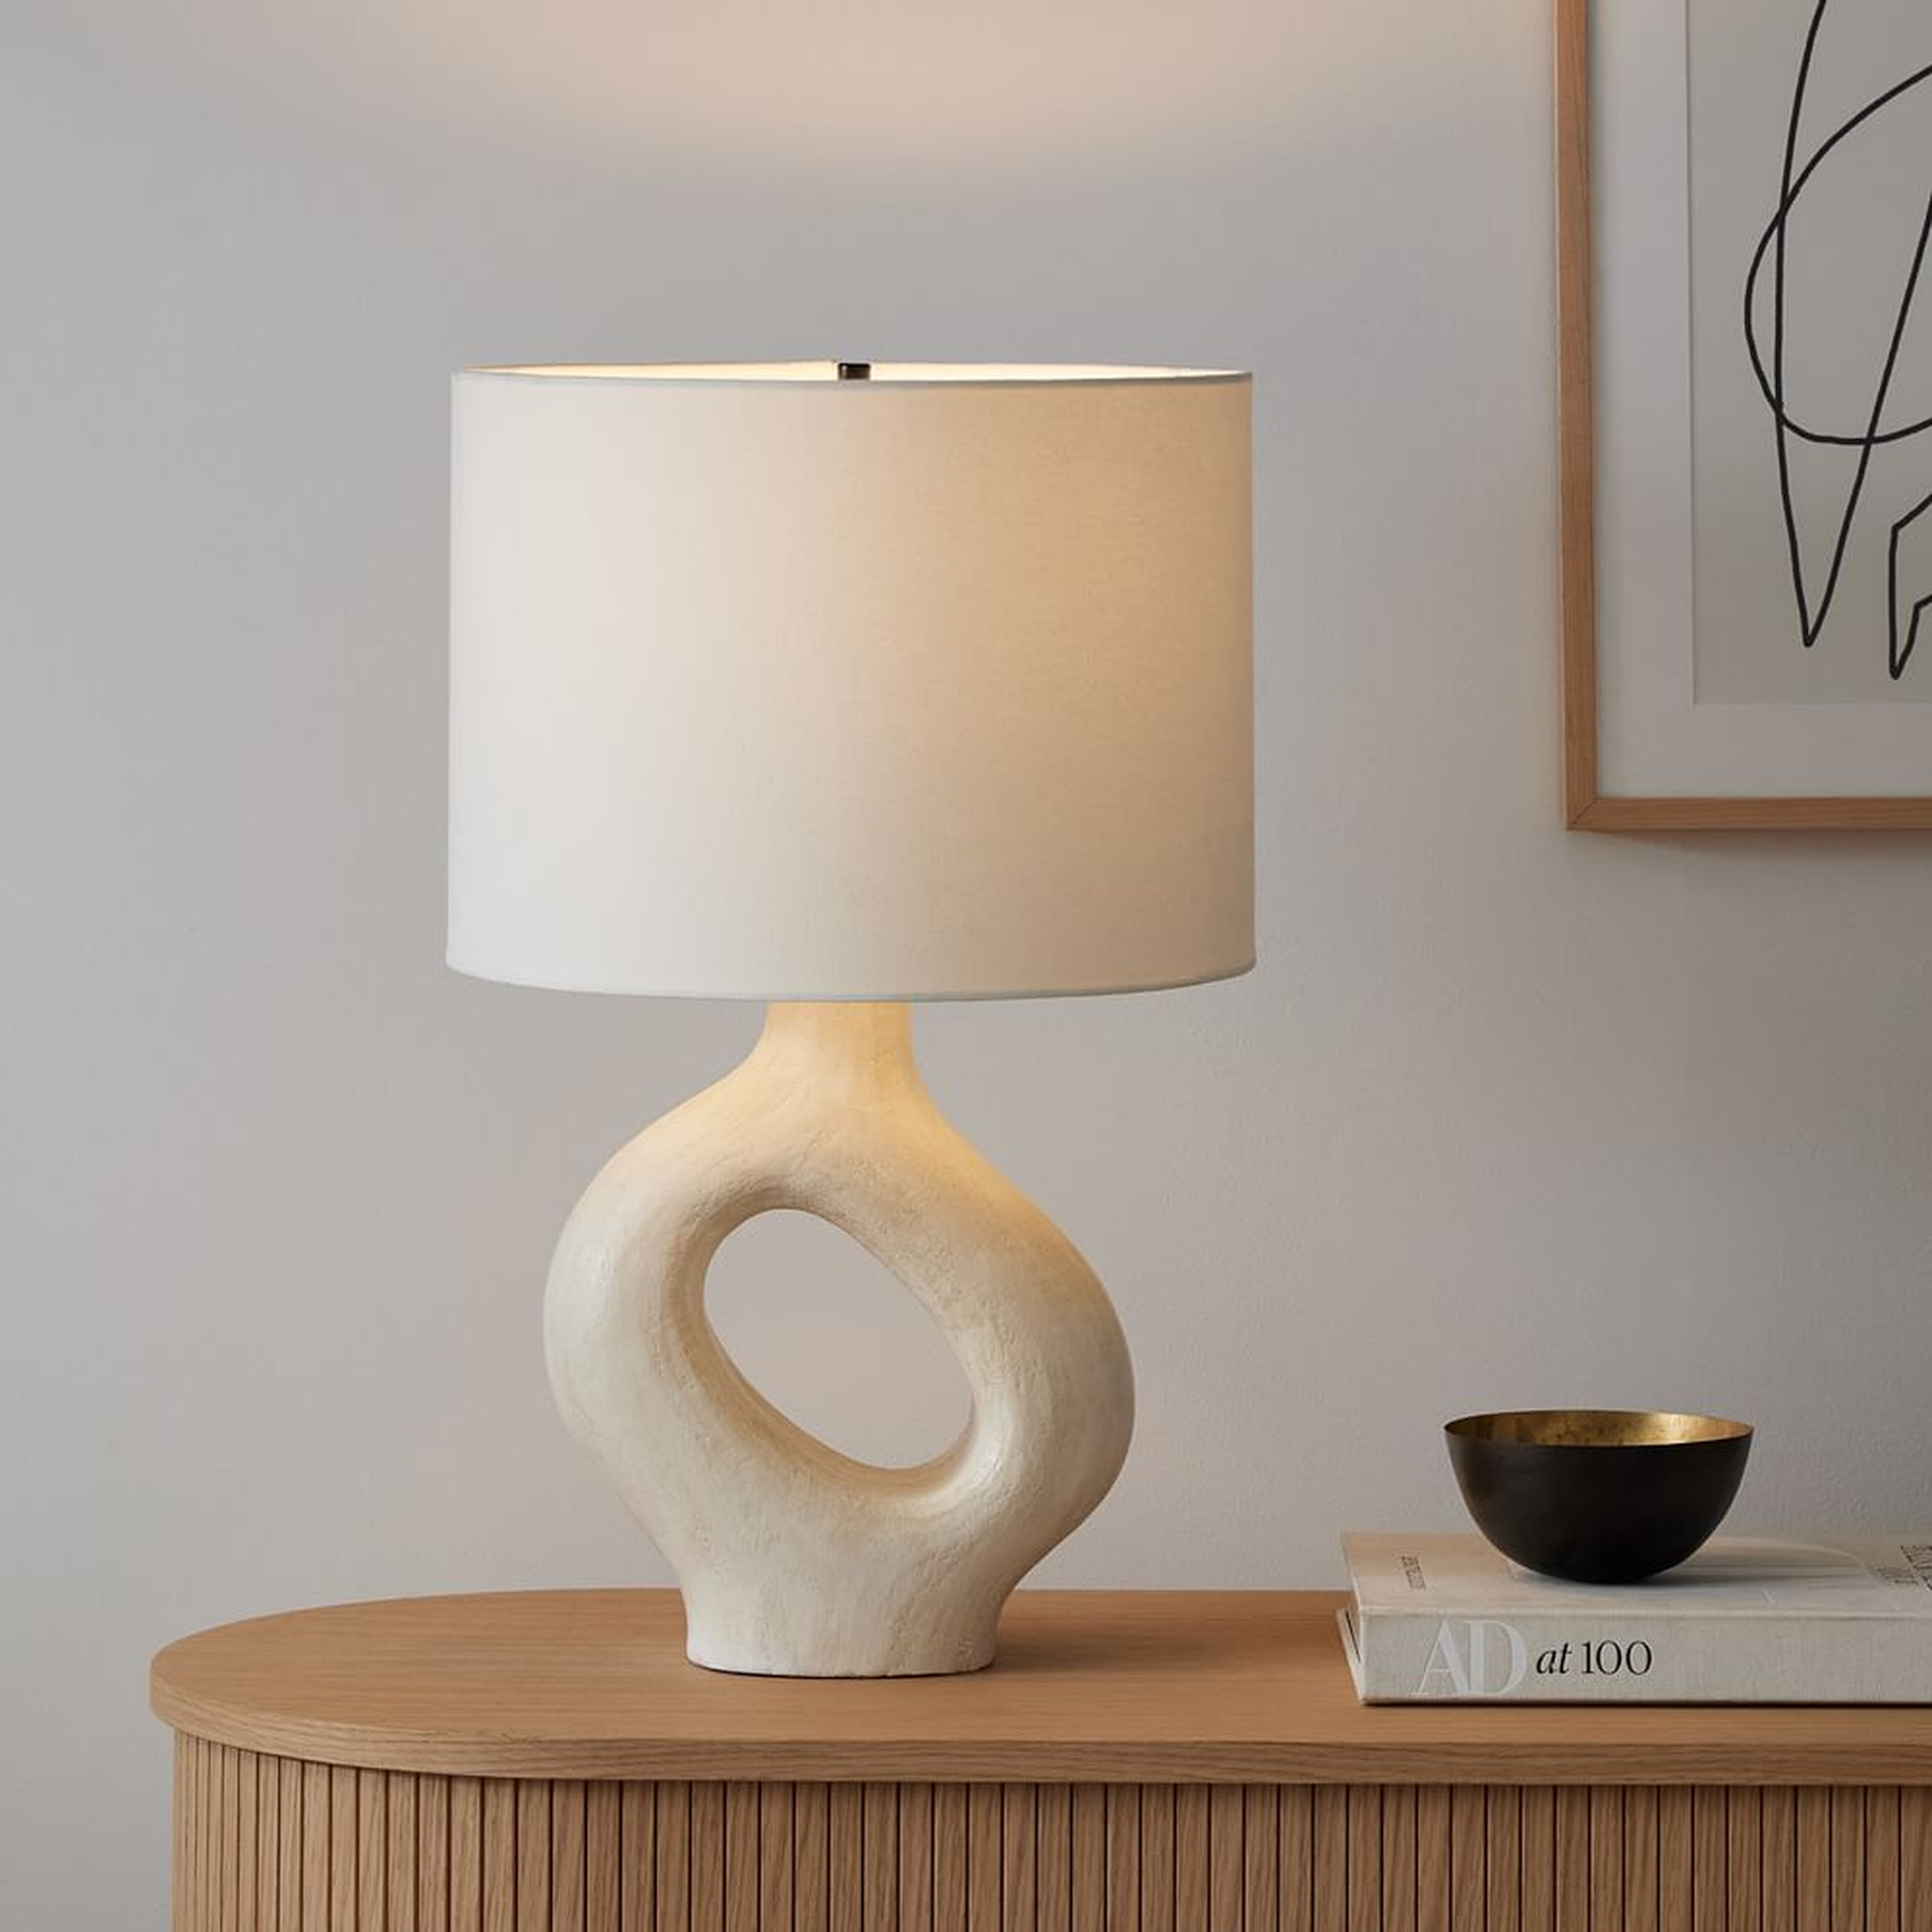 Chamber Ceramic Table Lamp, 24.5", White/White Linen - West Elm